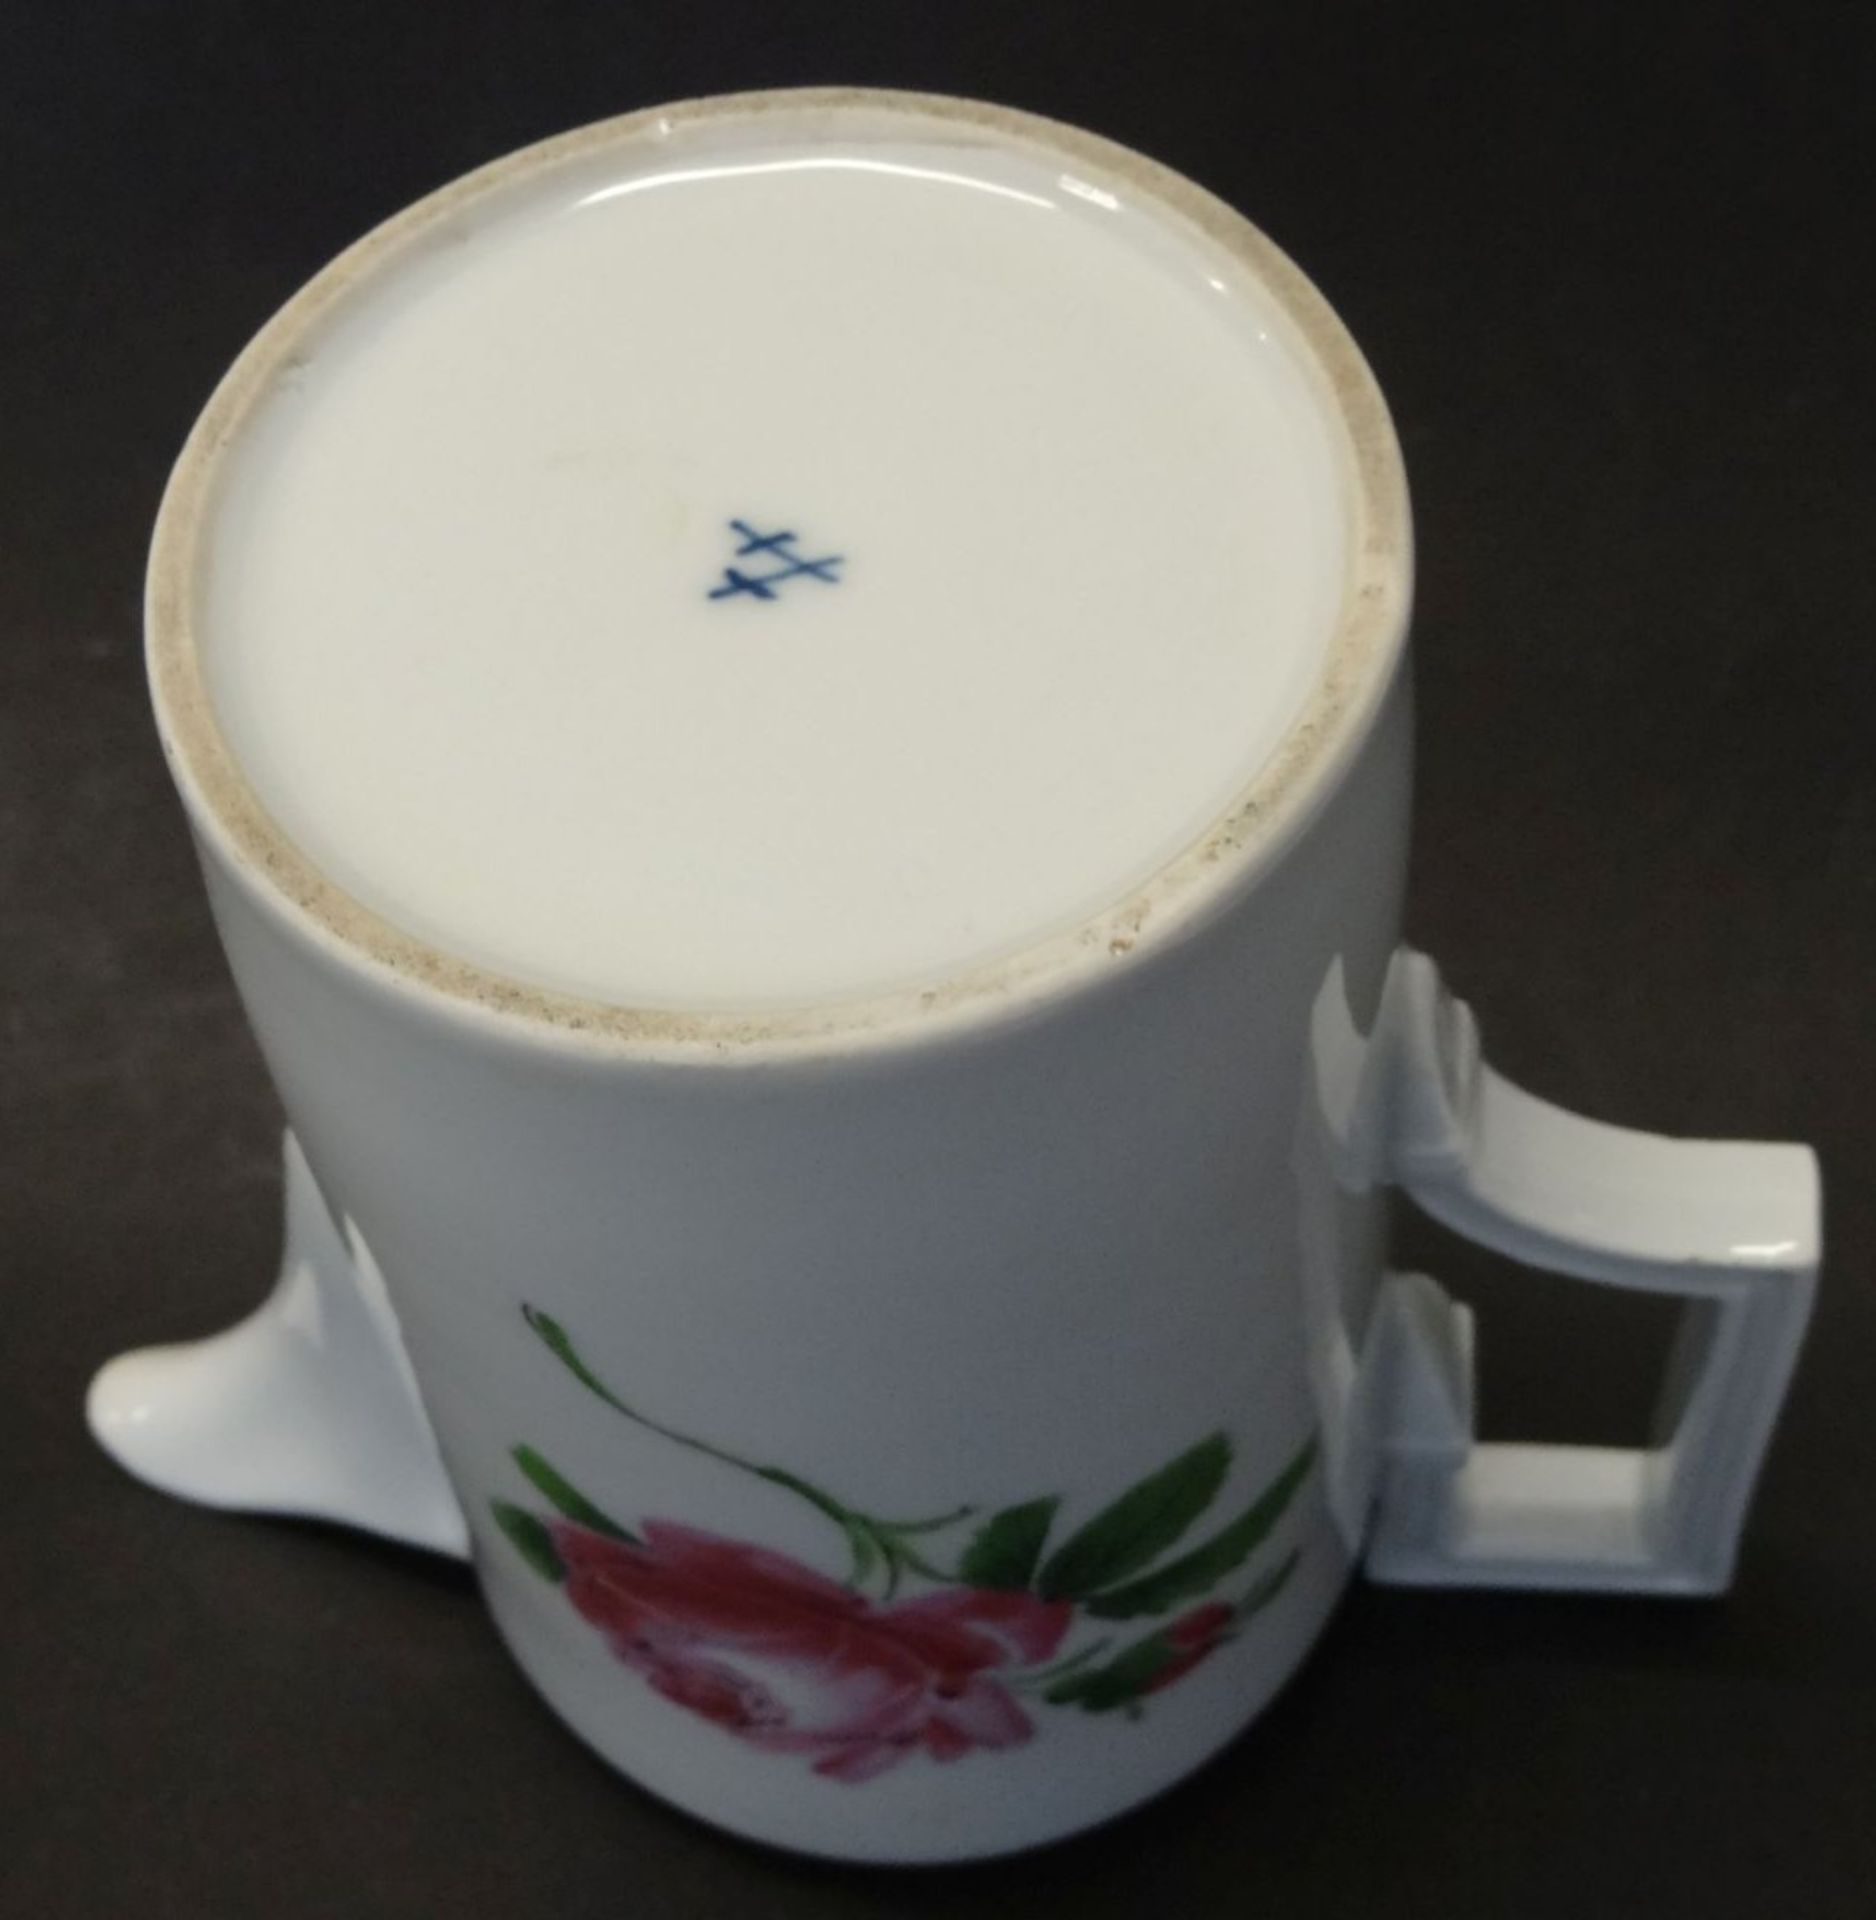 Empire-Kaffeekanne "Meissen" Rose um 1850, H-16,5 cm, Ausguss bestossen, Griff kaum sichtbare Klebe - Bild 5 aus 6